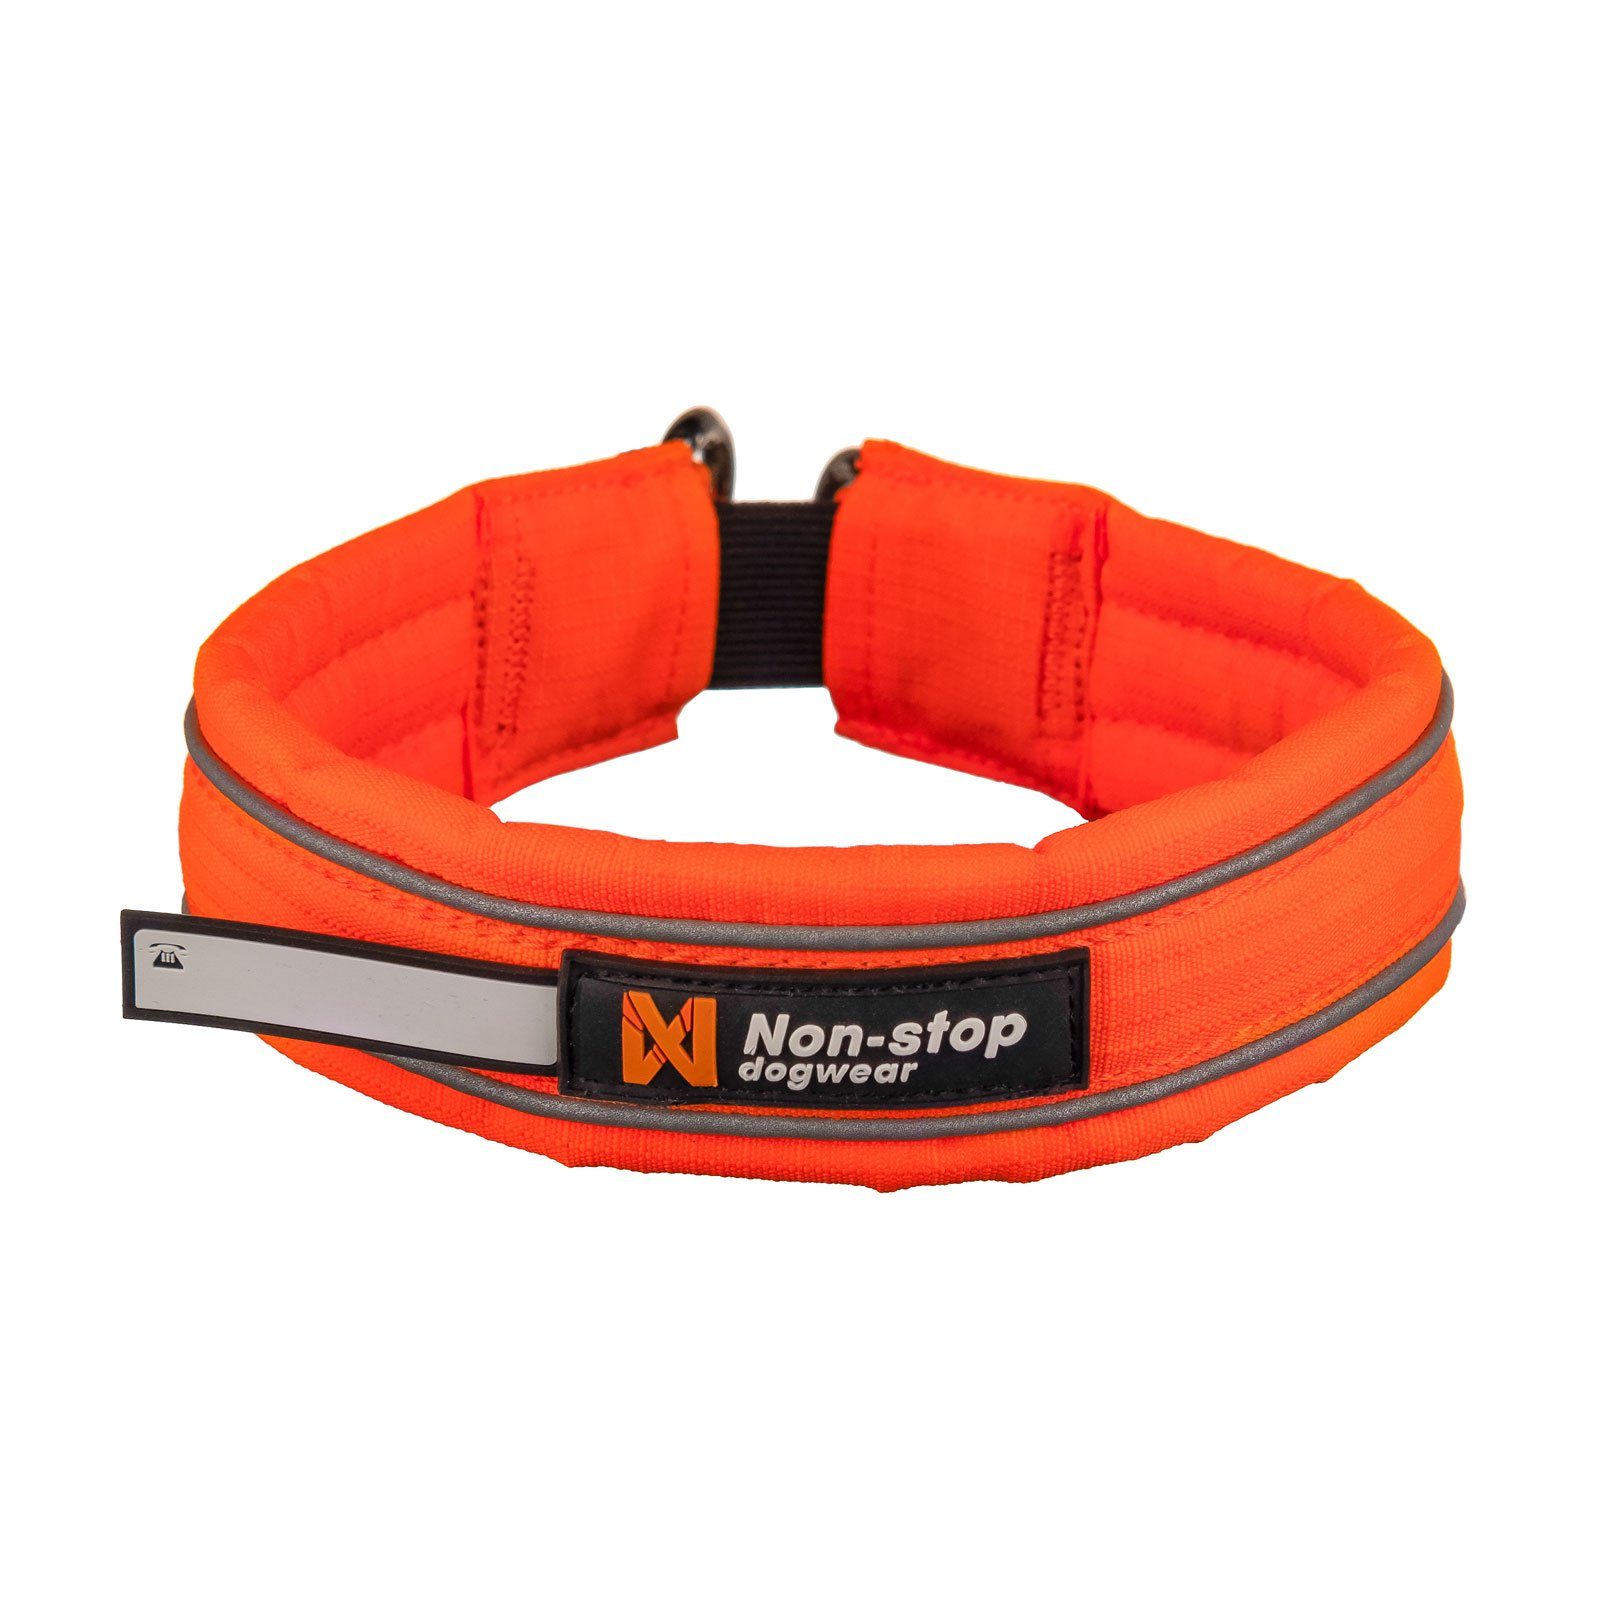 Non-stop dogwear Hunde-Halsband SAFE Collar, Nylon-Band, Für Hunde entwickelt, die sich in der Natur frei bewegen